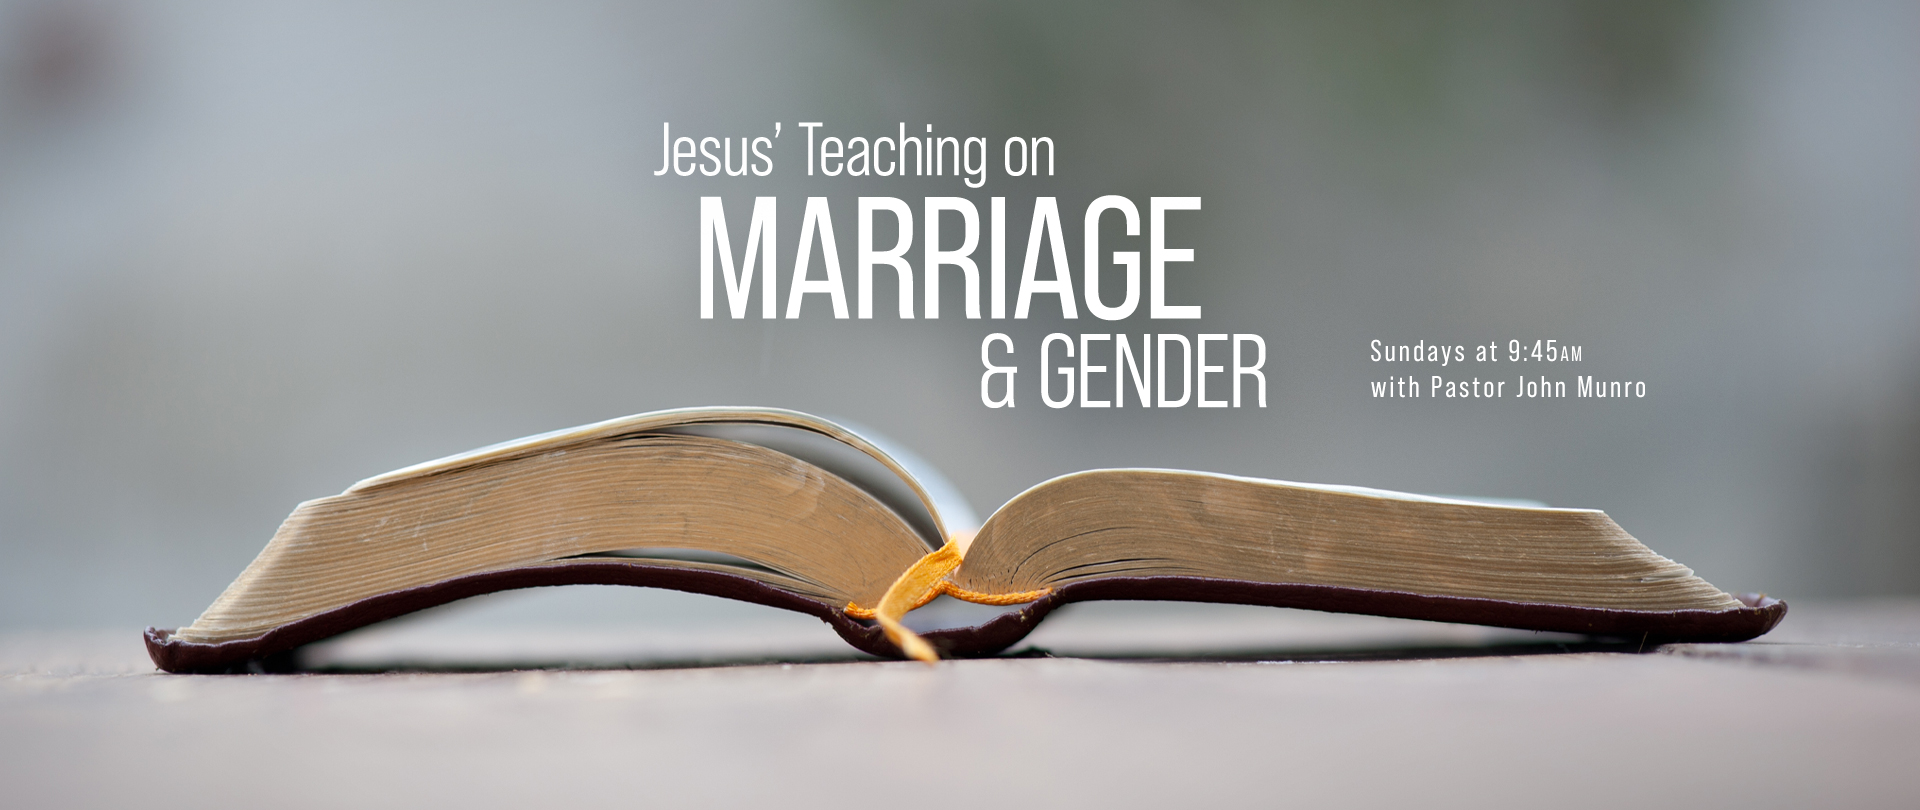 Jesus on Marriage & Gender
